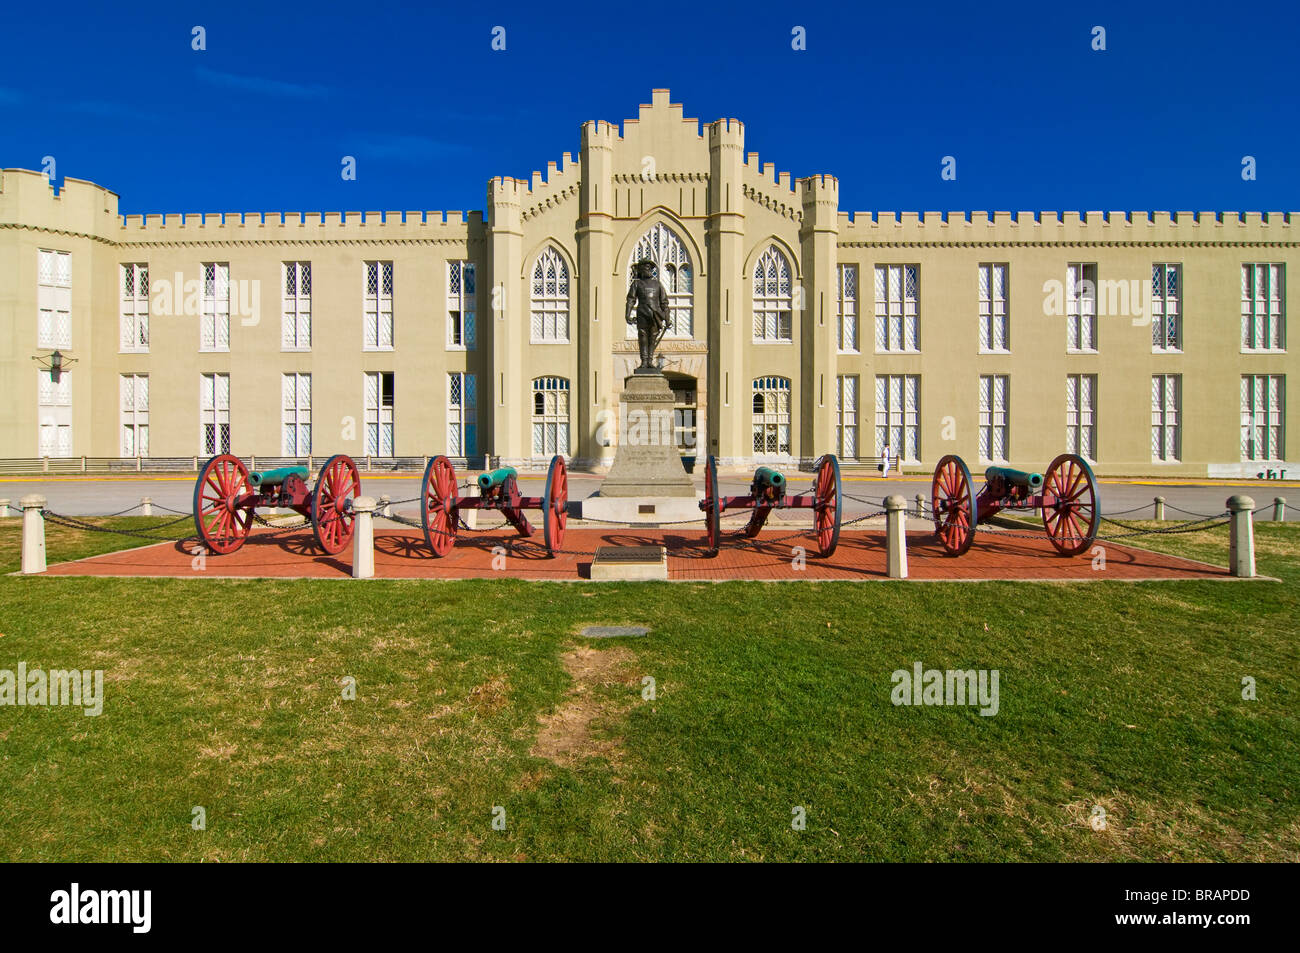 Le Collège militaire de Lexington, Virginia, États-Unis d'Amérique, Amérique du Nord Banque D'Images